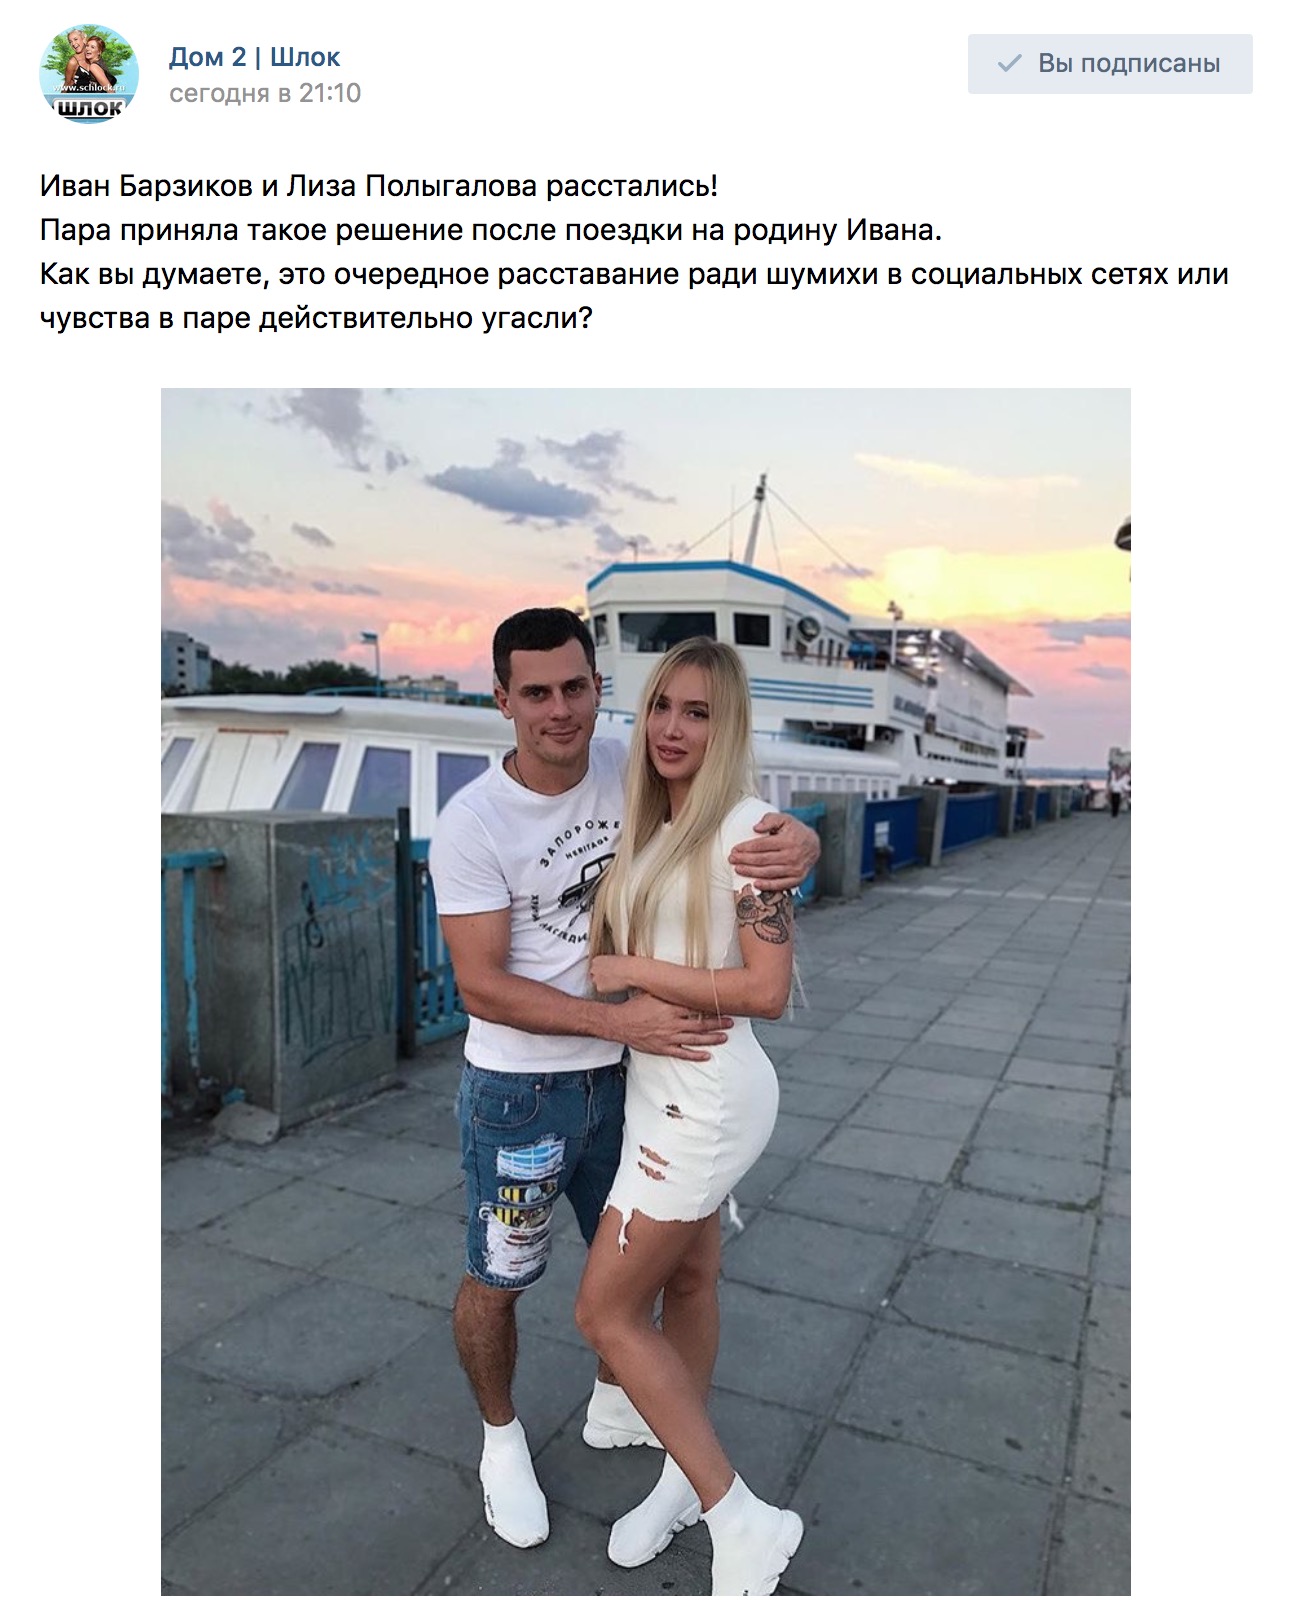 Иван Барзиков и Лиза Полыгалова расстались!